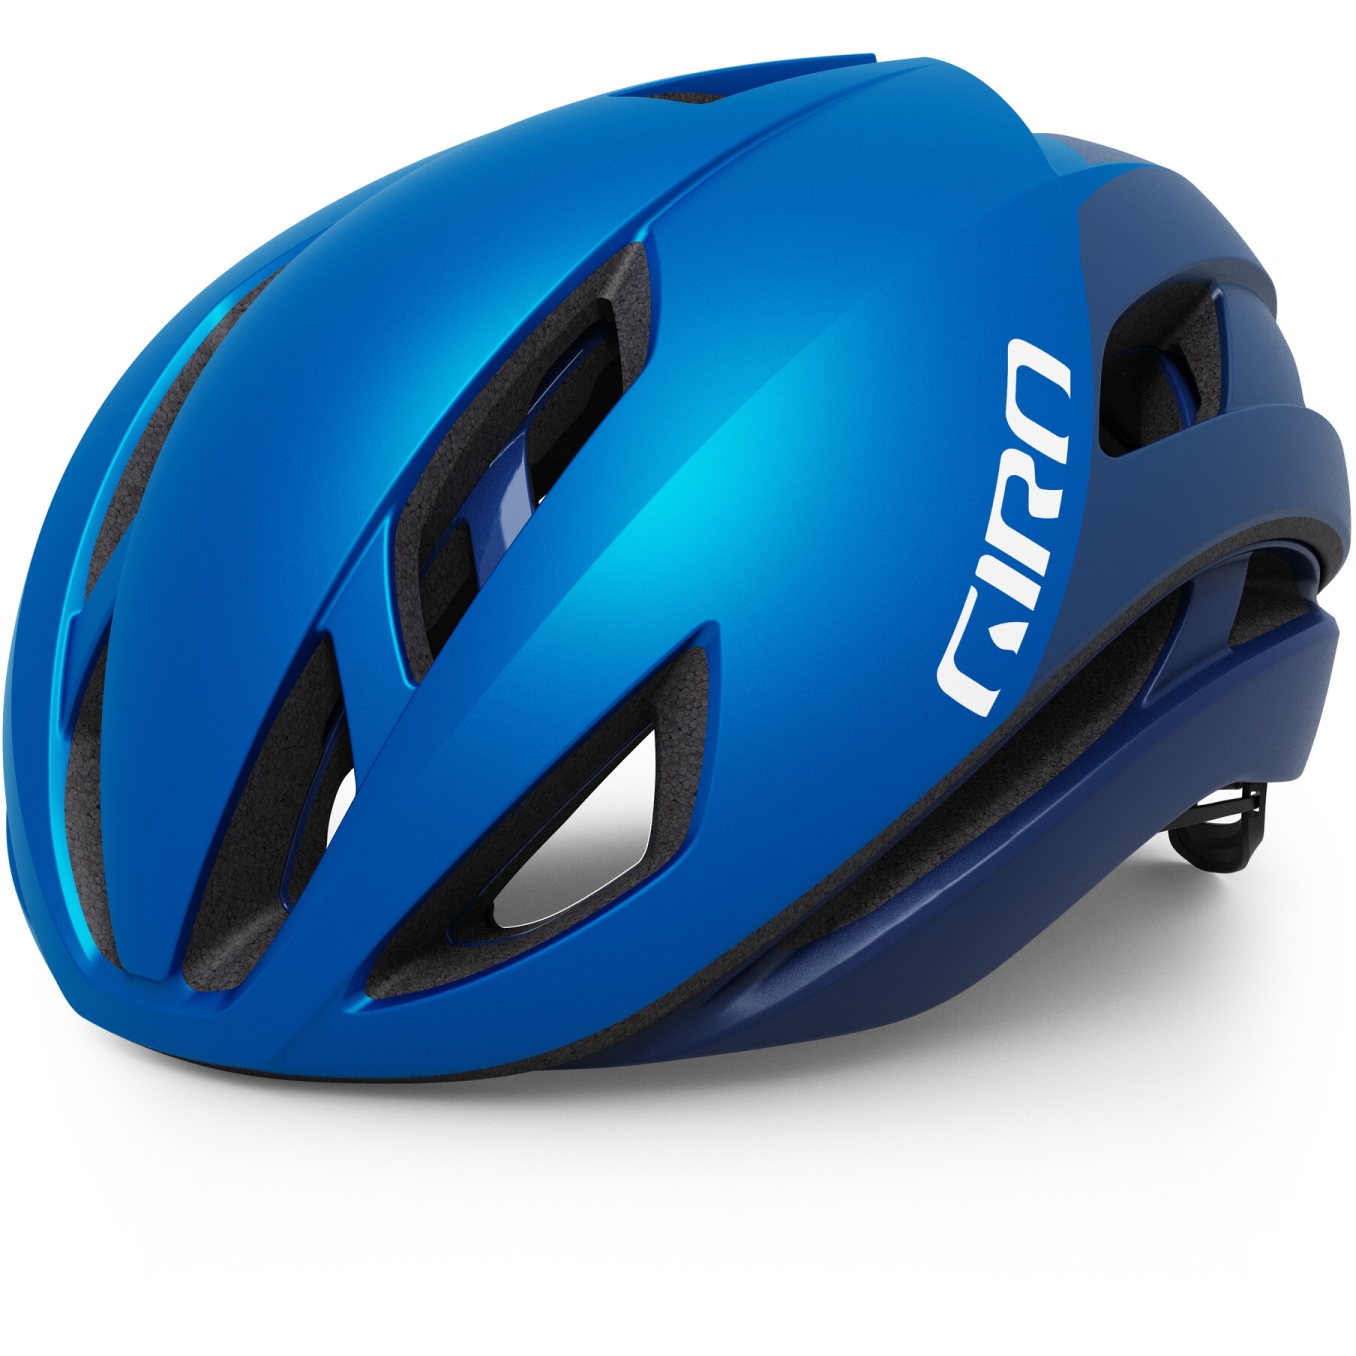 Produktbild von Giro Eclipse Spherical Helm - matte ano blue